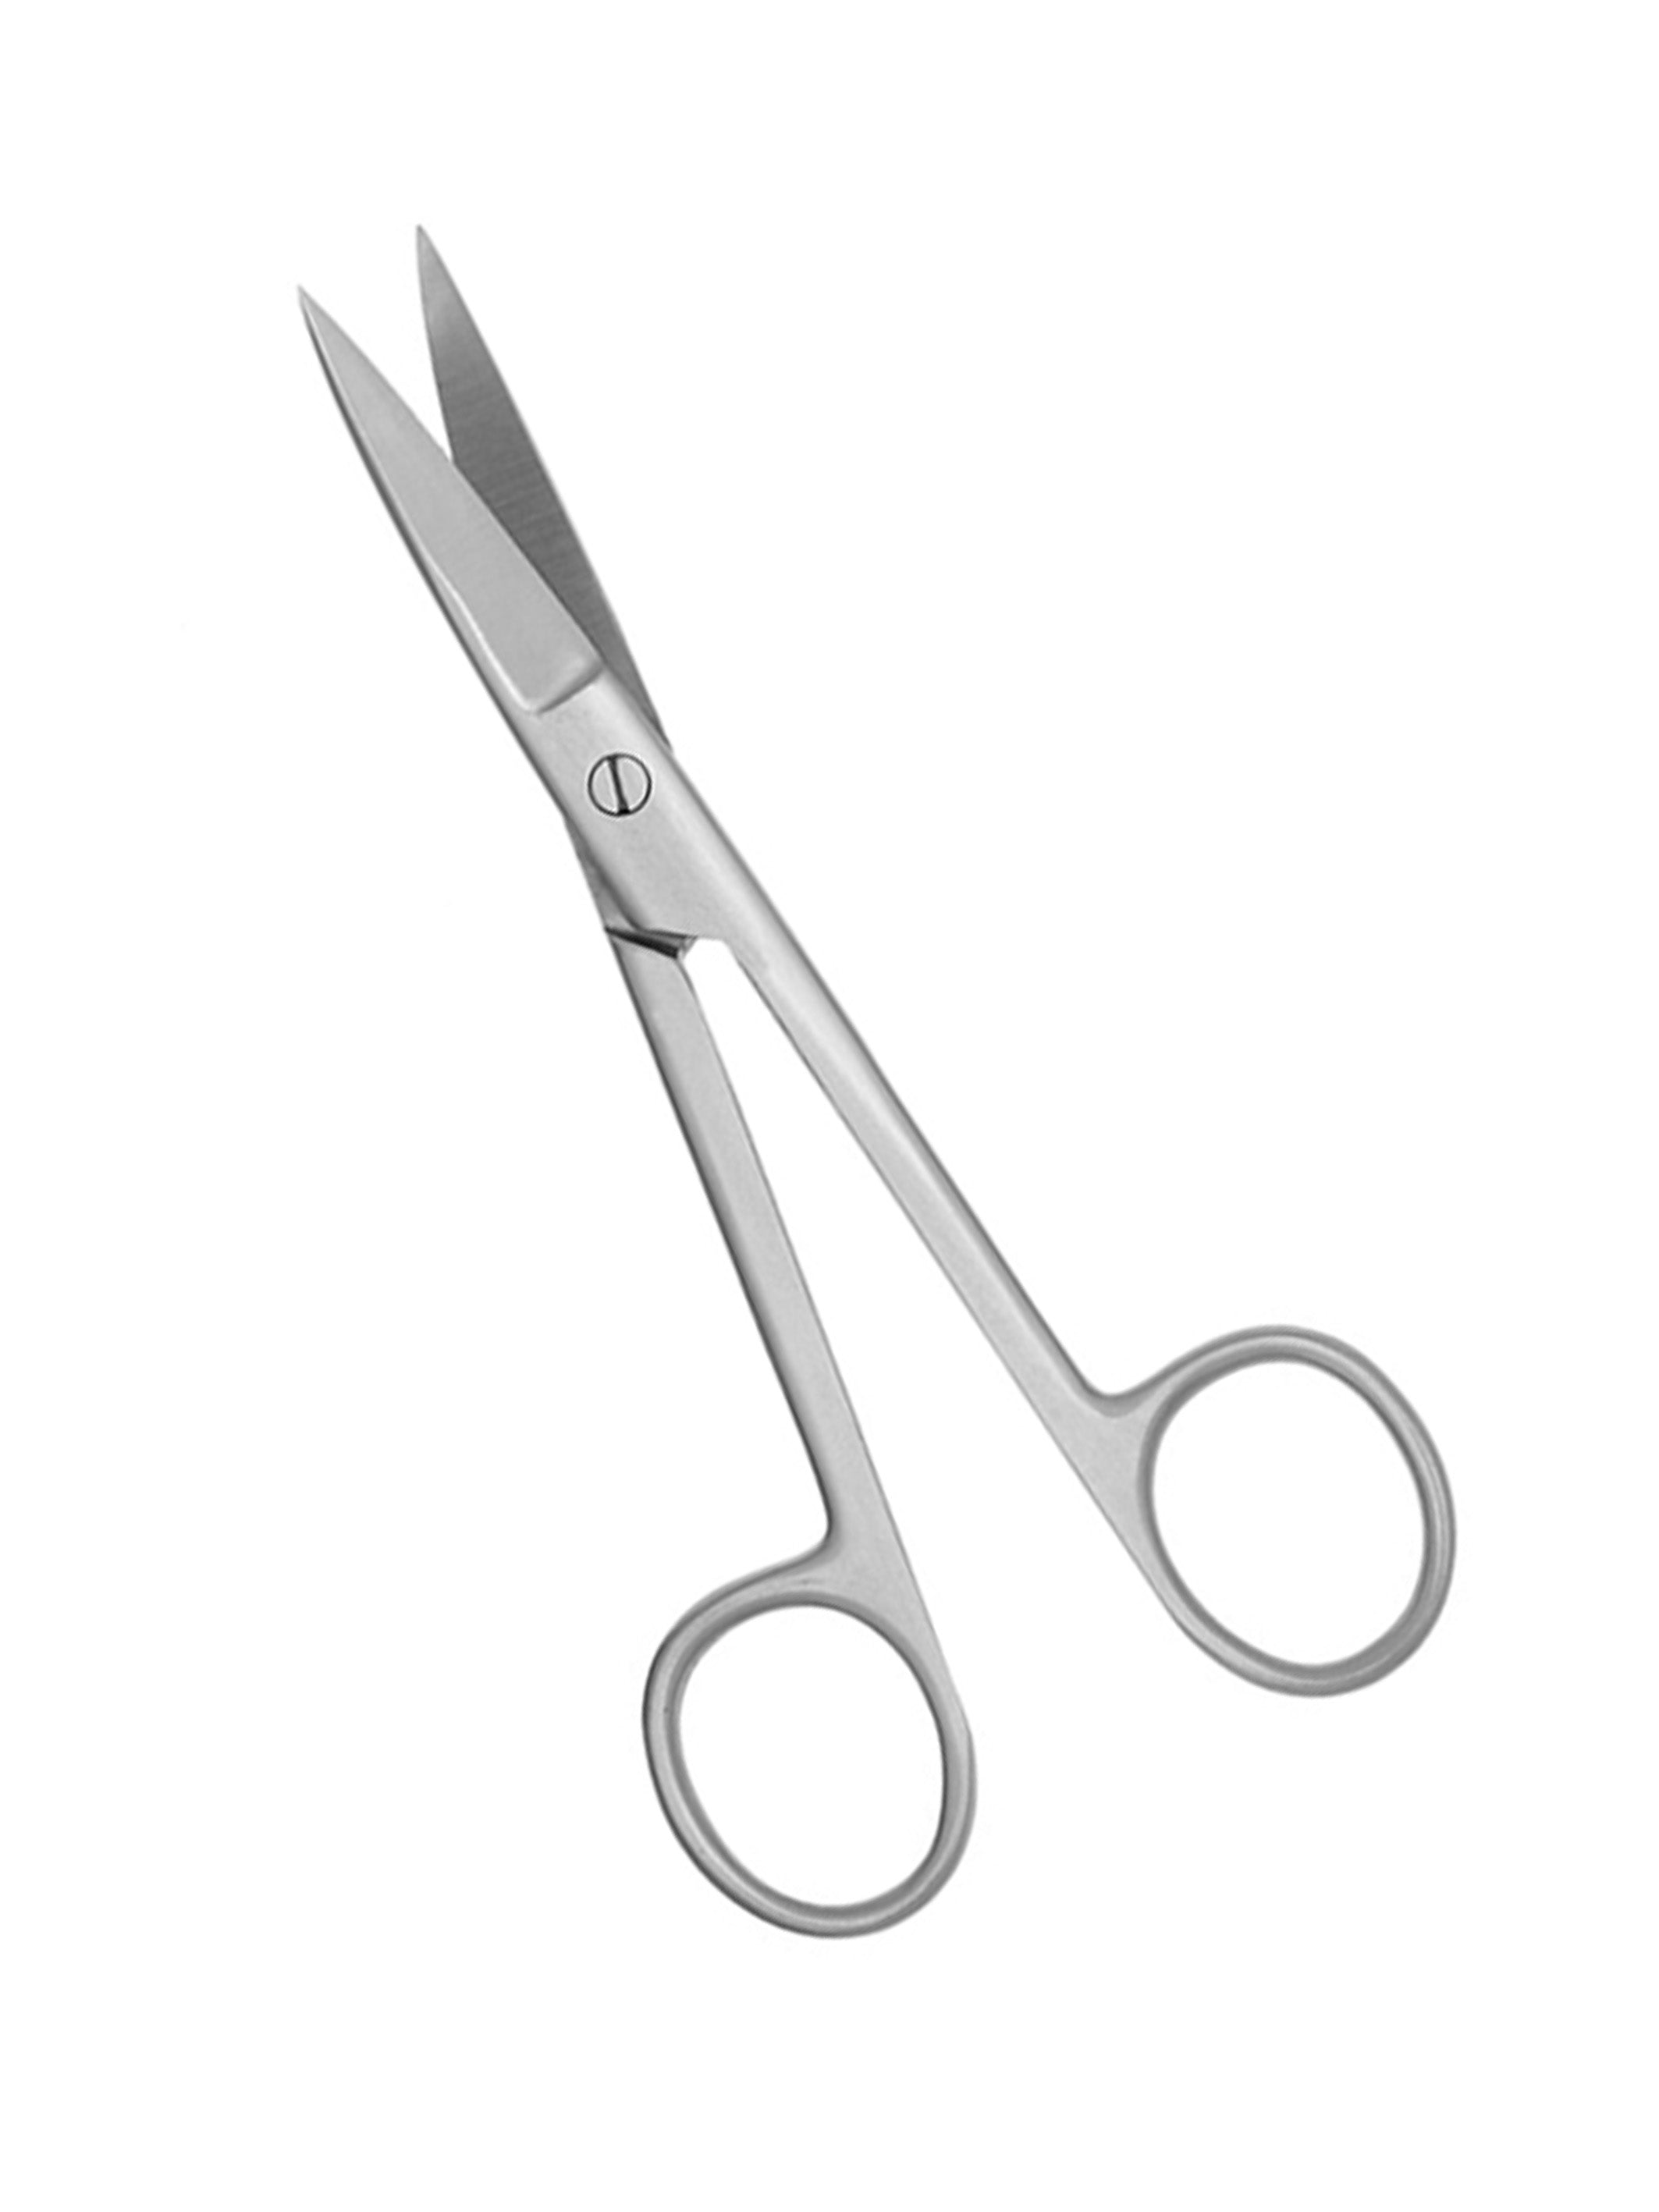 Surgical Scissors Operating Scissors 5 1-2"